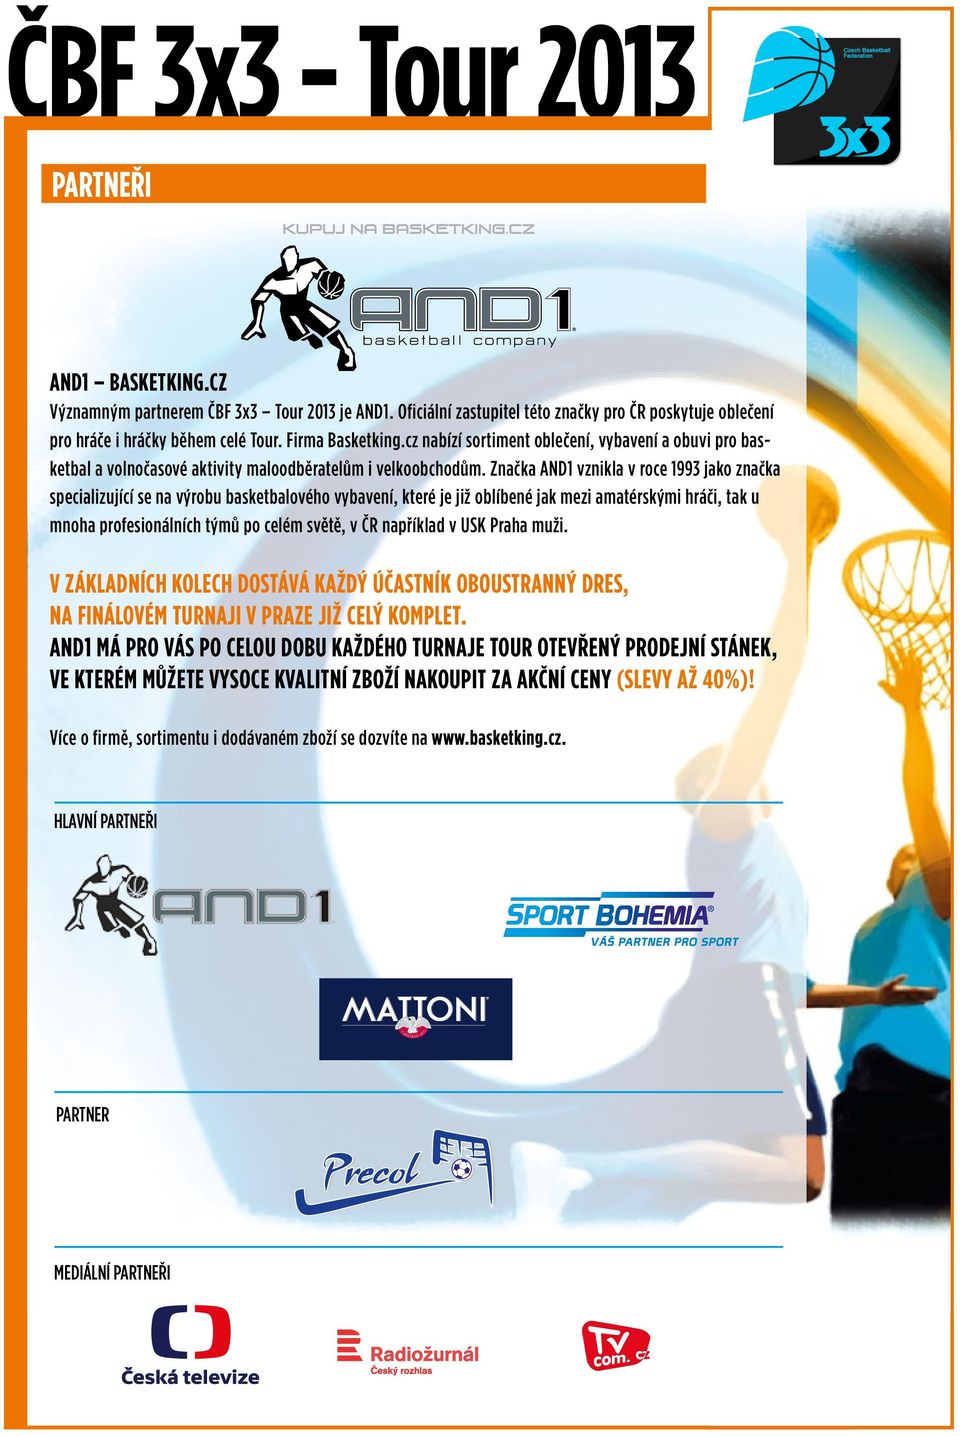 Značka AND1 vznikla v roce 1993 jako značka specializující se na výrobu basketbalového vybavení, které je již oblíbené jak mezi amatérskými hráči, tak u mnoha profesionálních týmů po celém světě, v